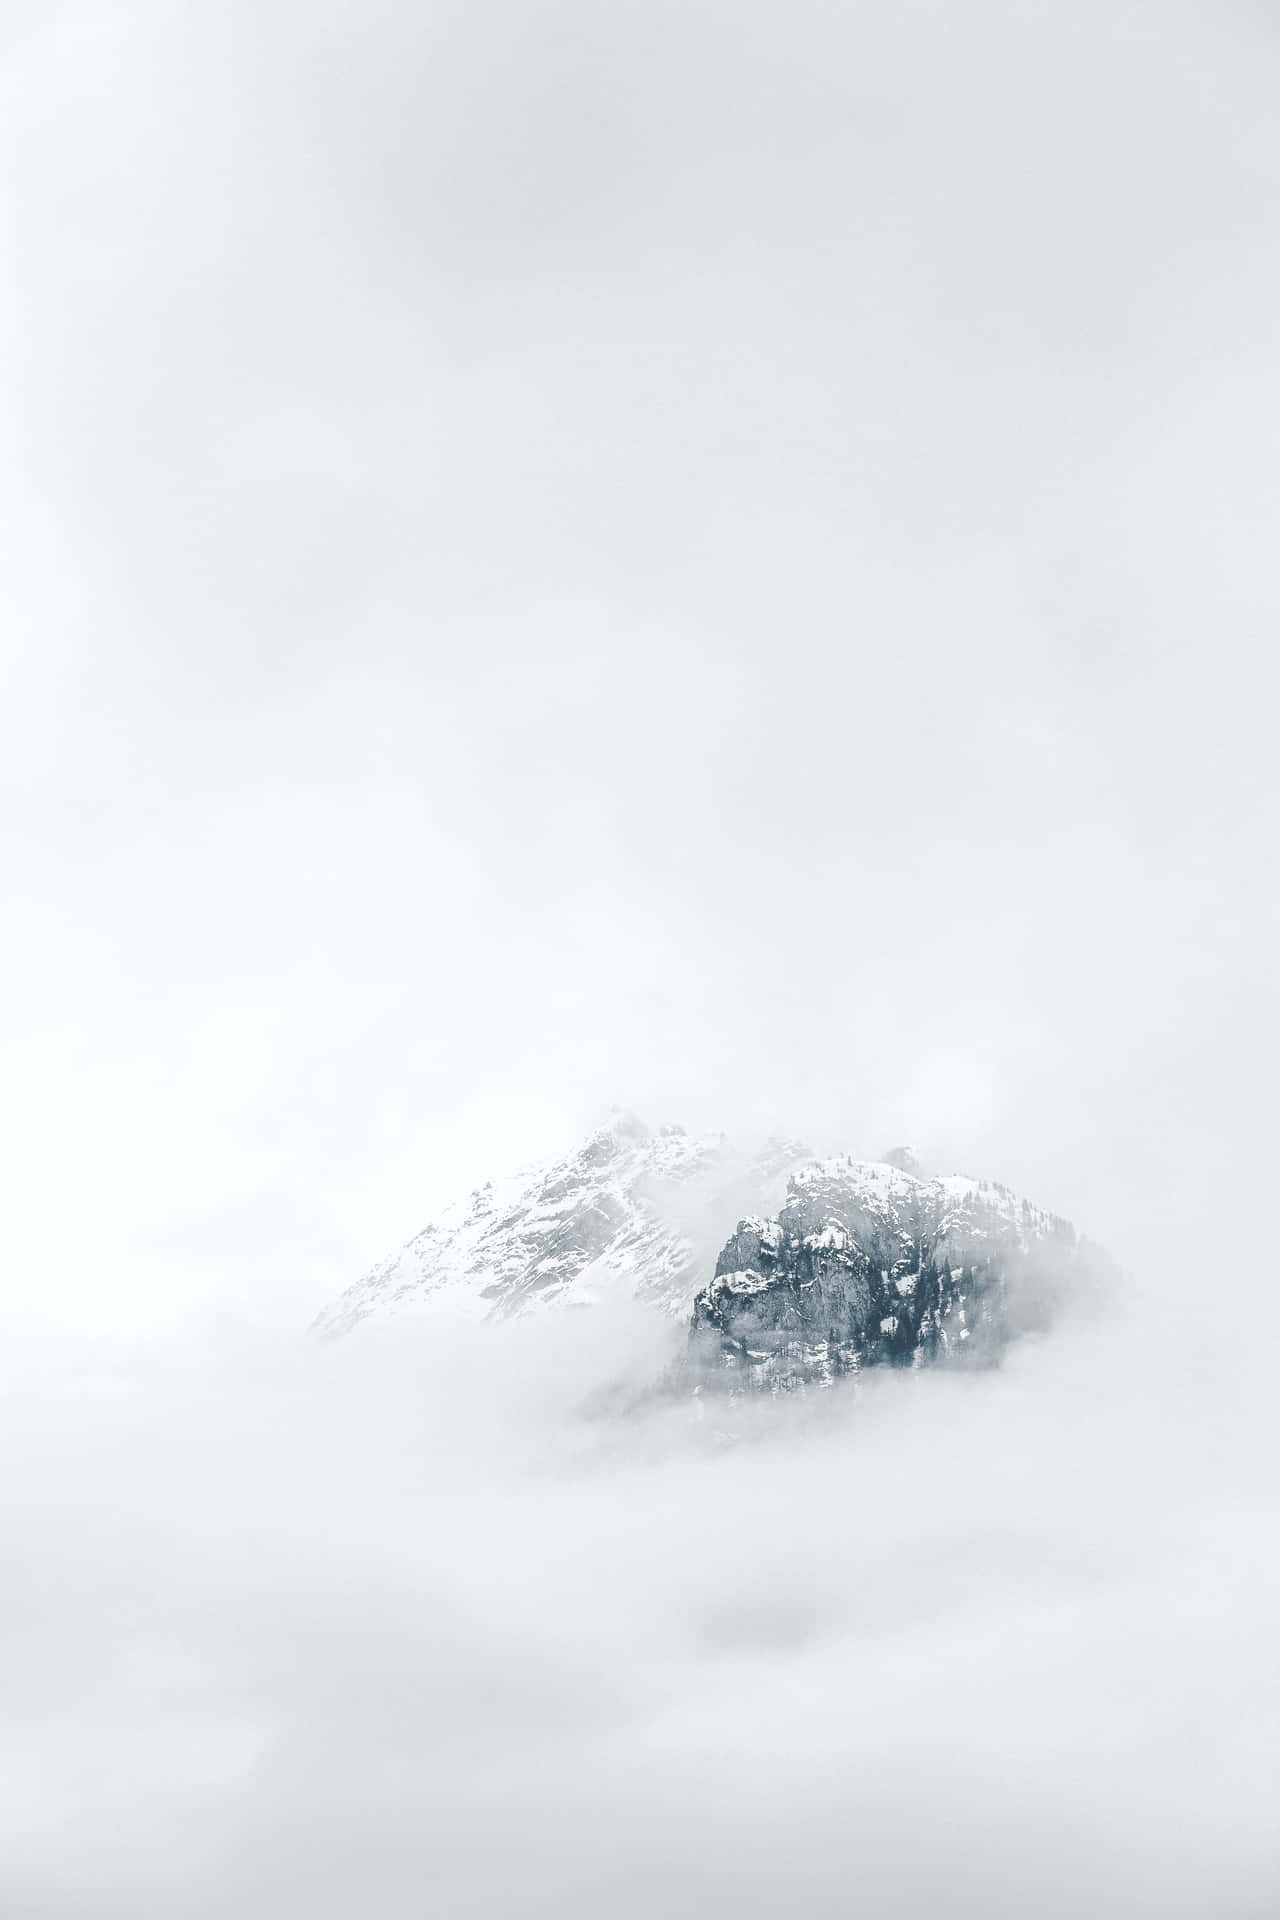 Einberg, Der Von Wolken Bedeckt Ist Und Oben Mit Schnee Bedeckt Ist